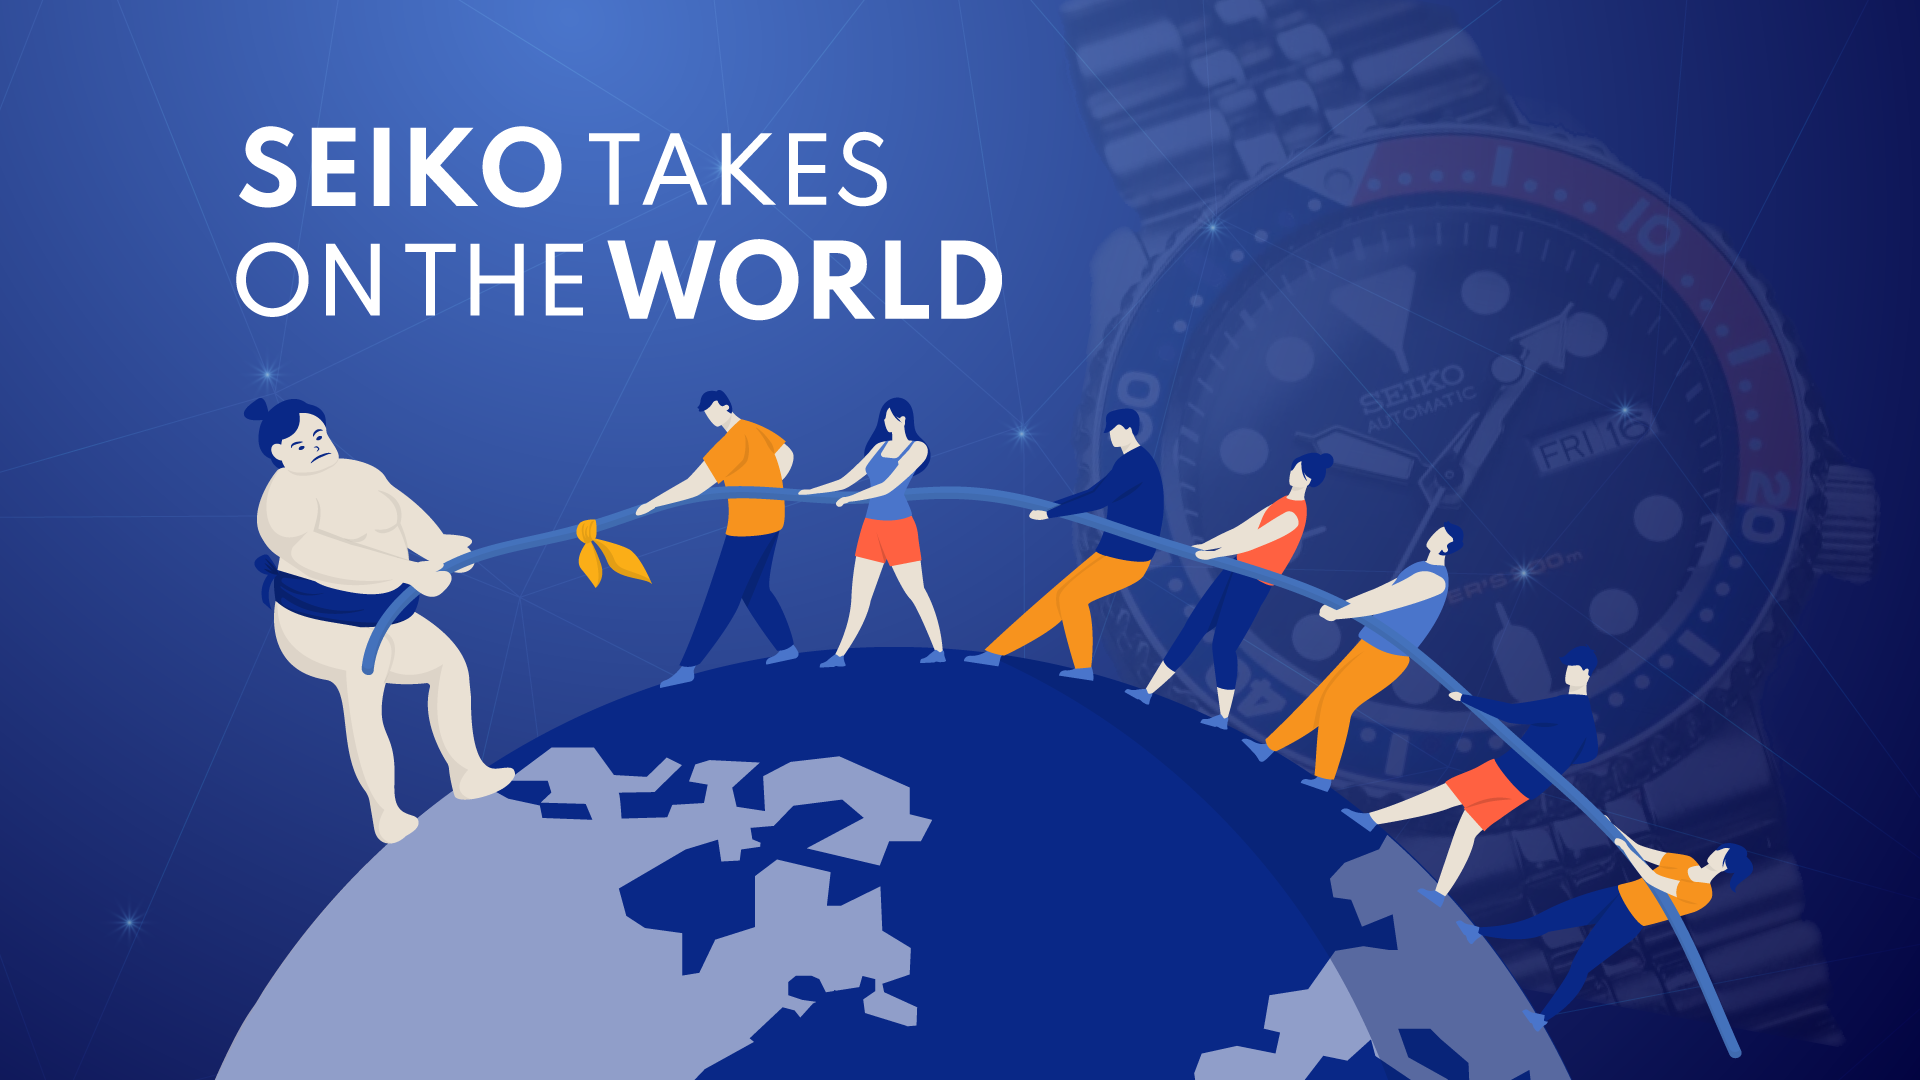 Seiko takes on the world banner